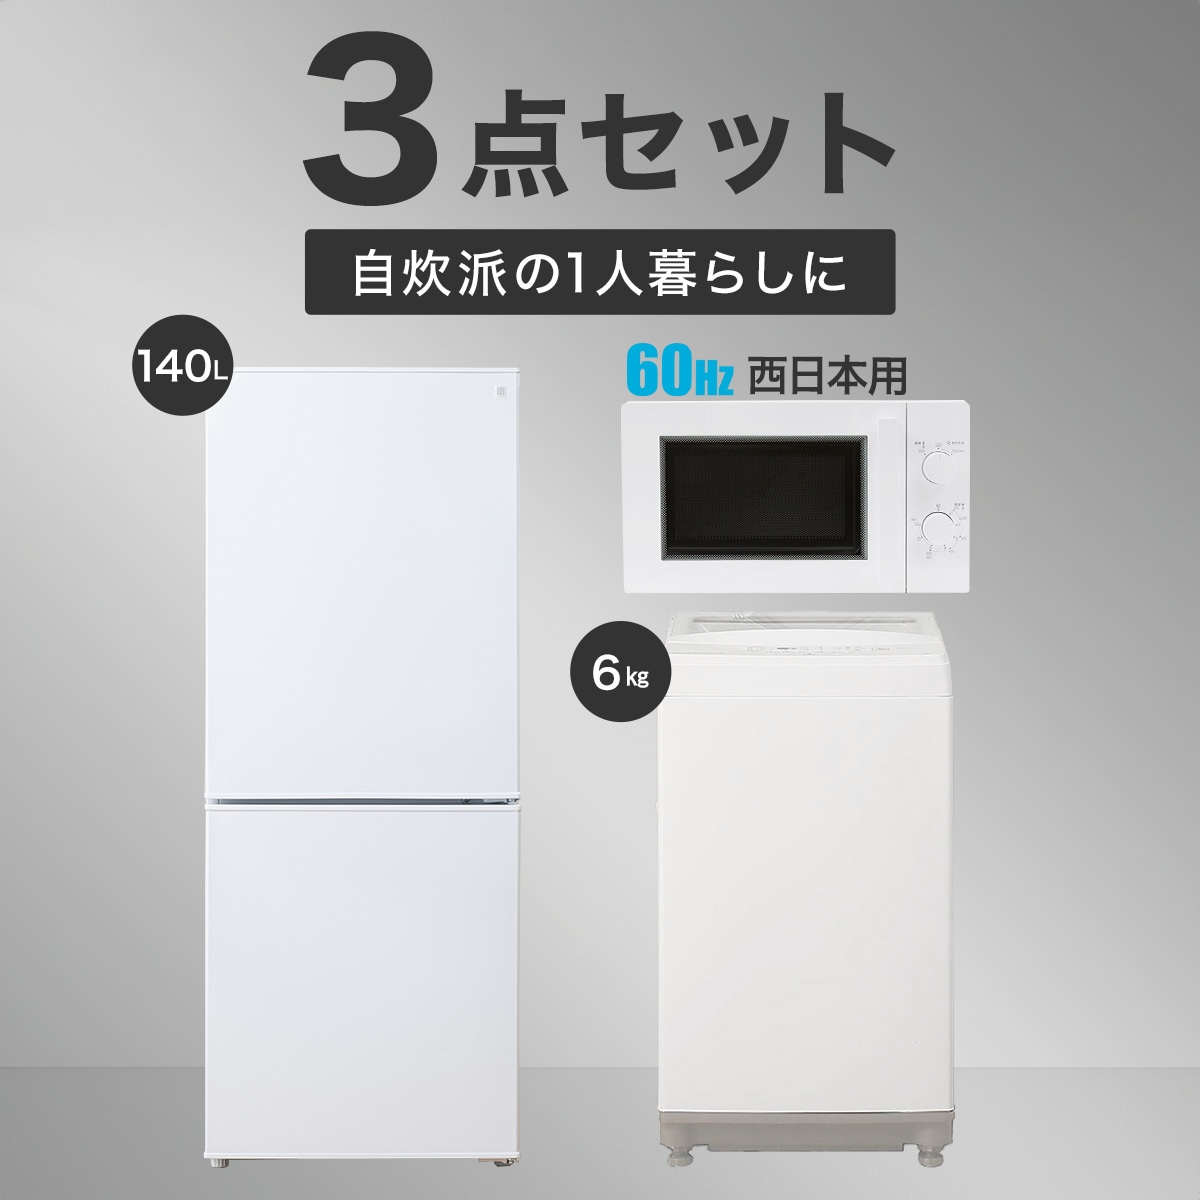 19,008円247B ニトリ冷蔵庫 洗濯機 セット 一人暮らし 小型 単身向け